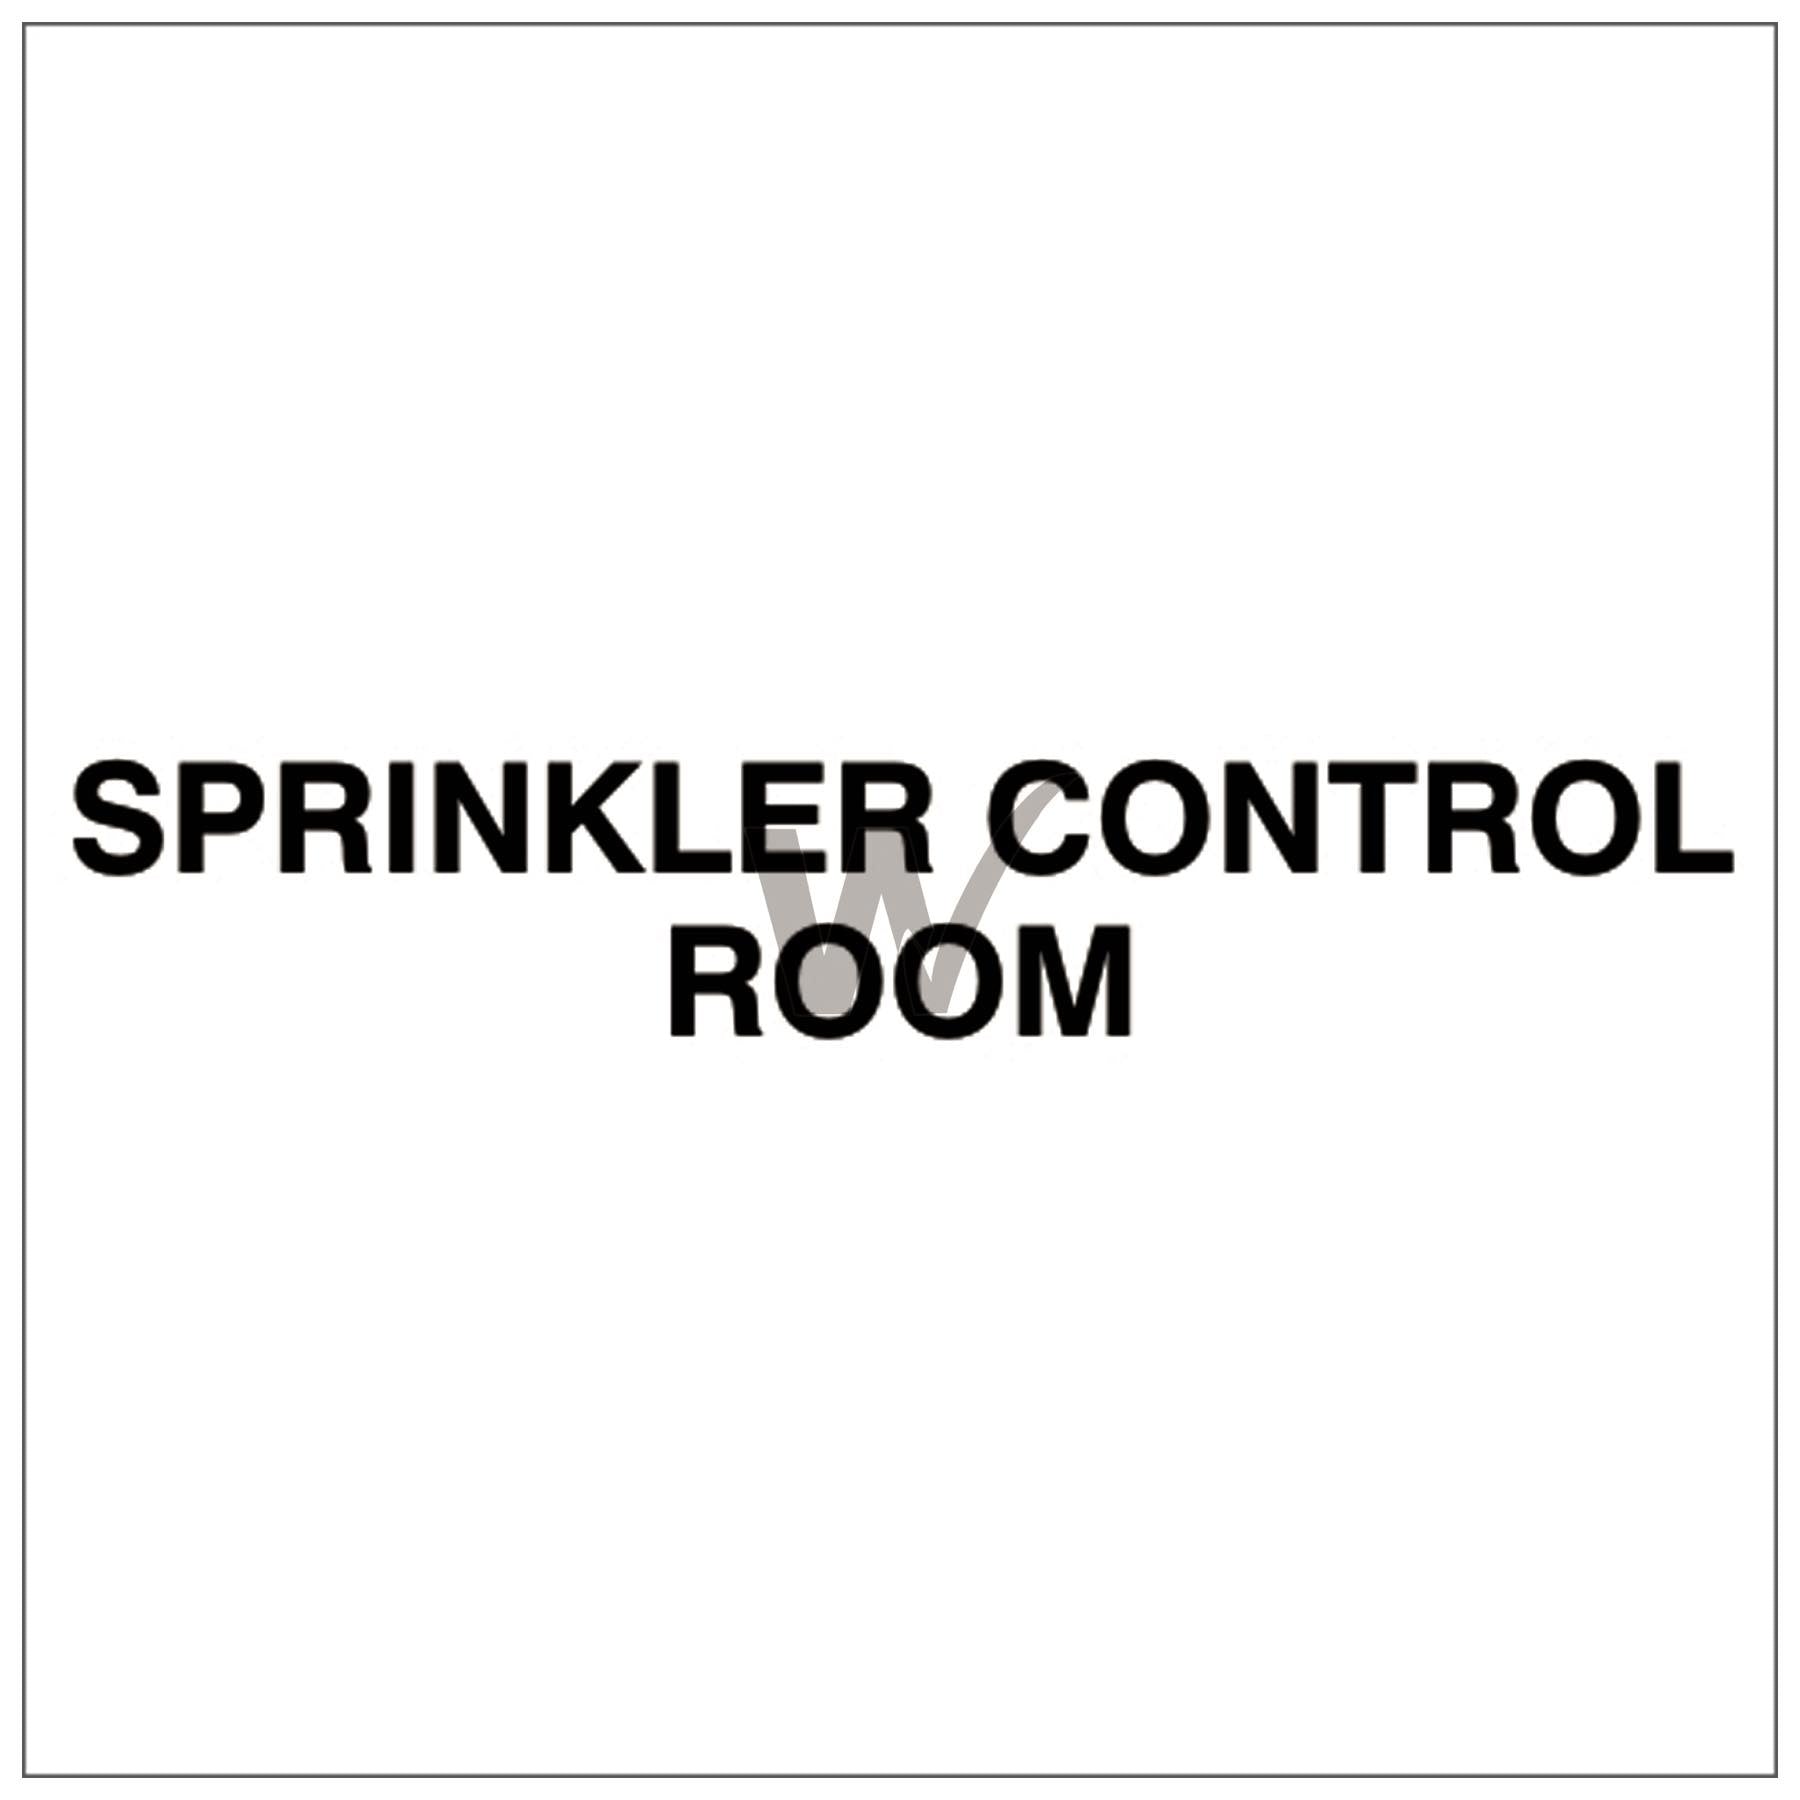 Fire Door Text - Sprinkler Control Room